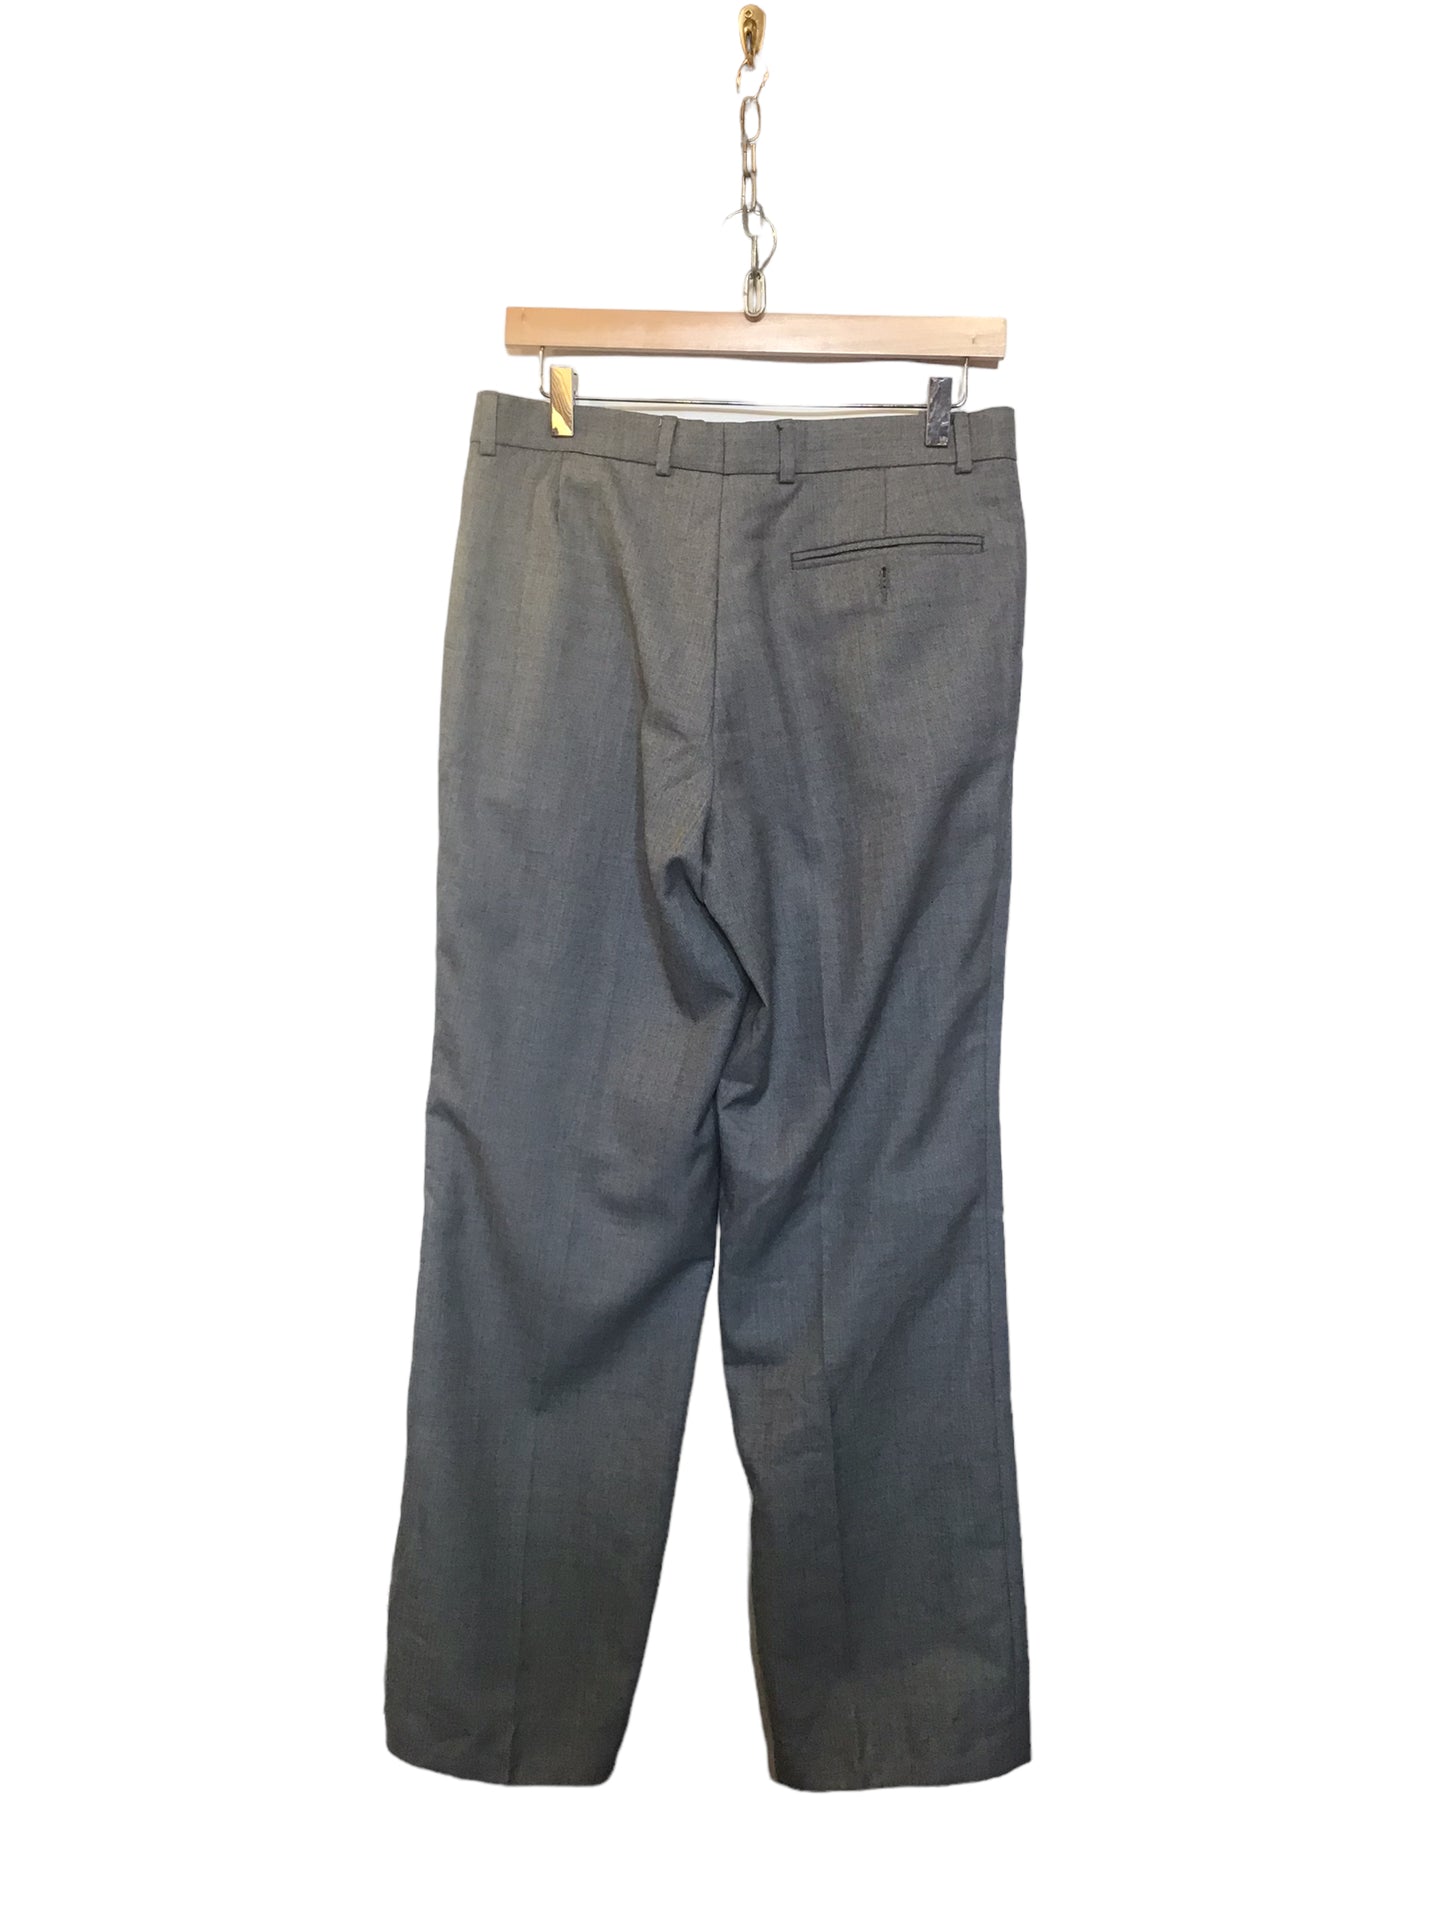 Men’s Suit Trousers (32x29)